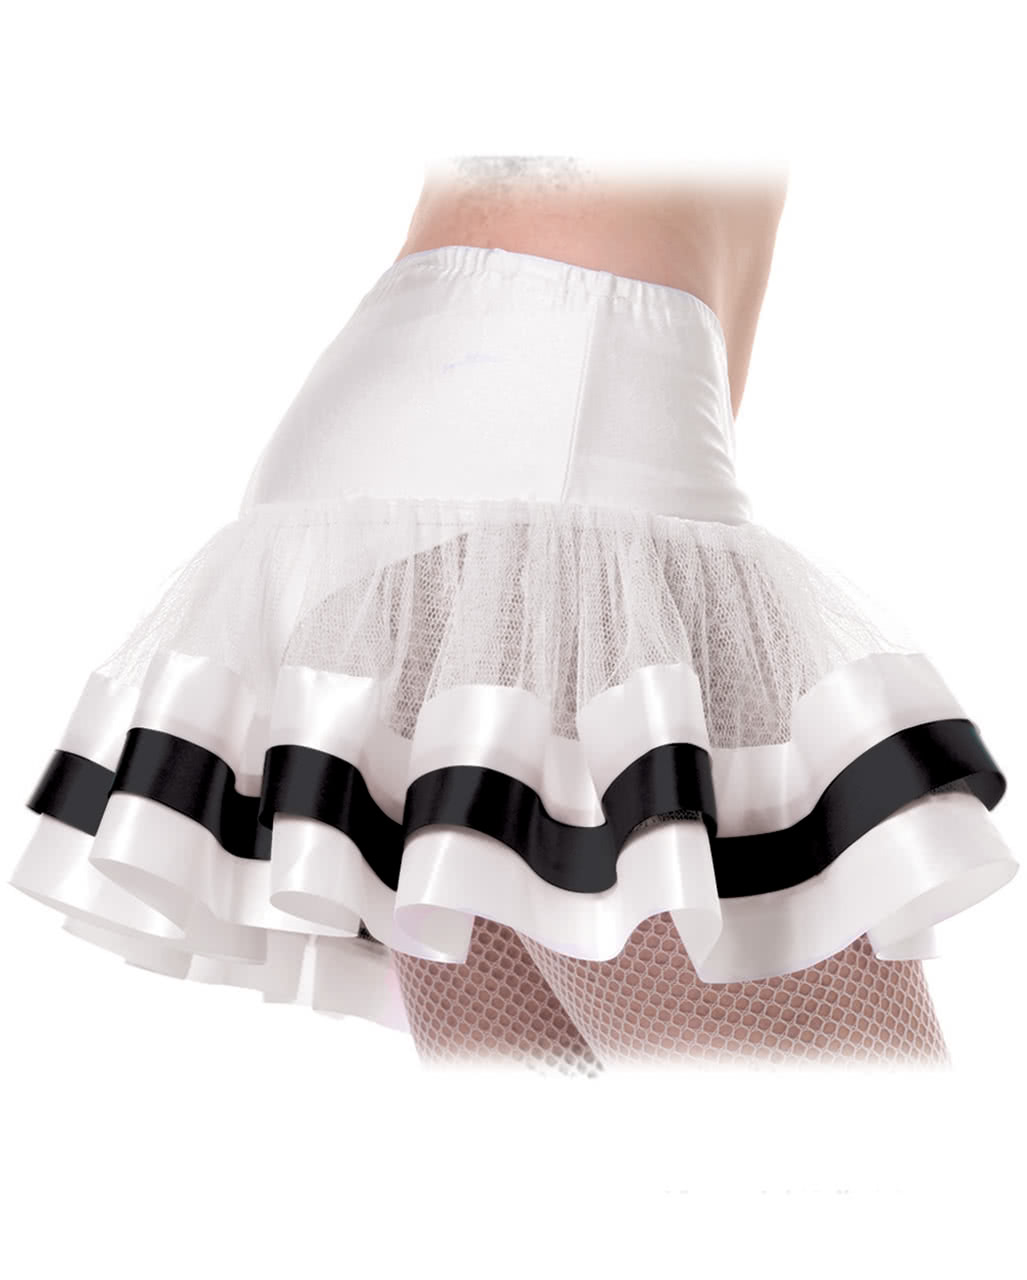 Petticoat white-black Sexy costume accessory | Horror-Shop.com